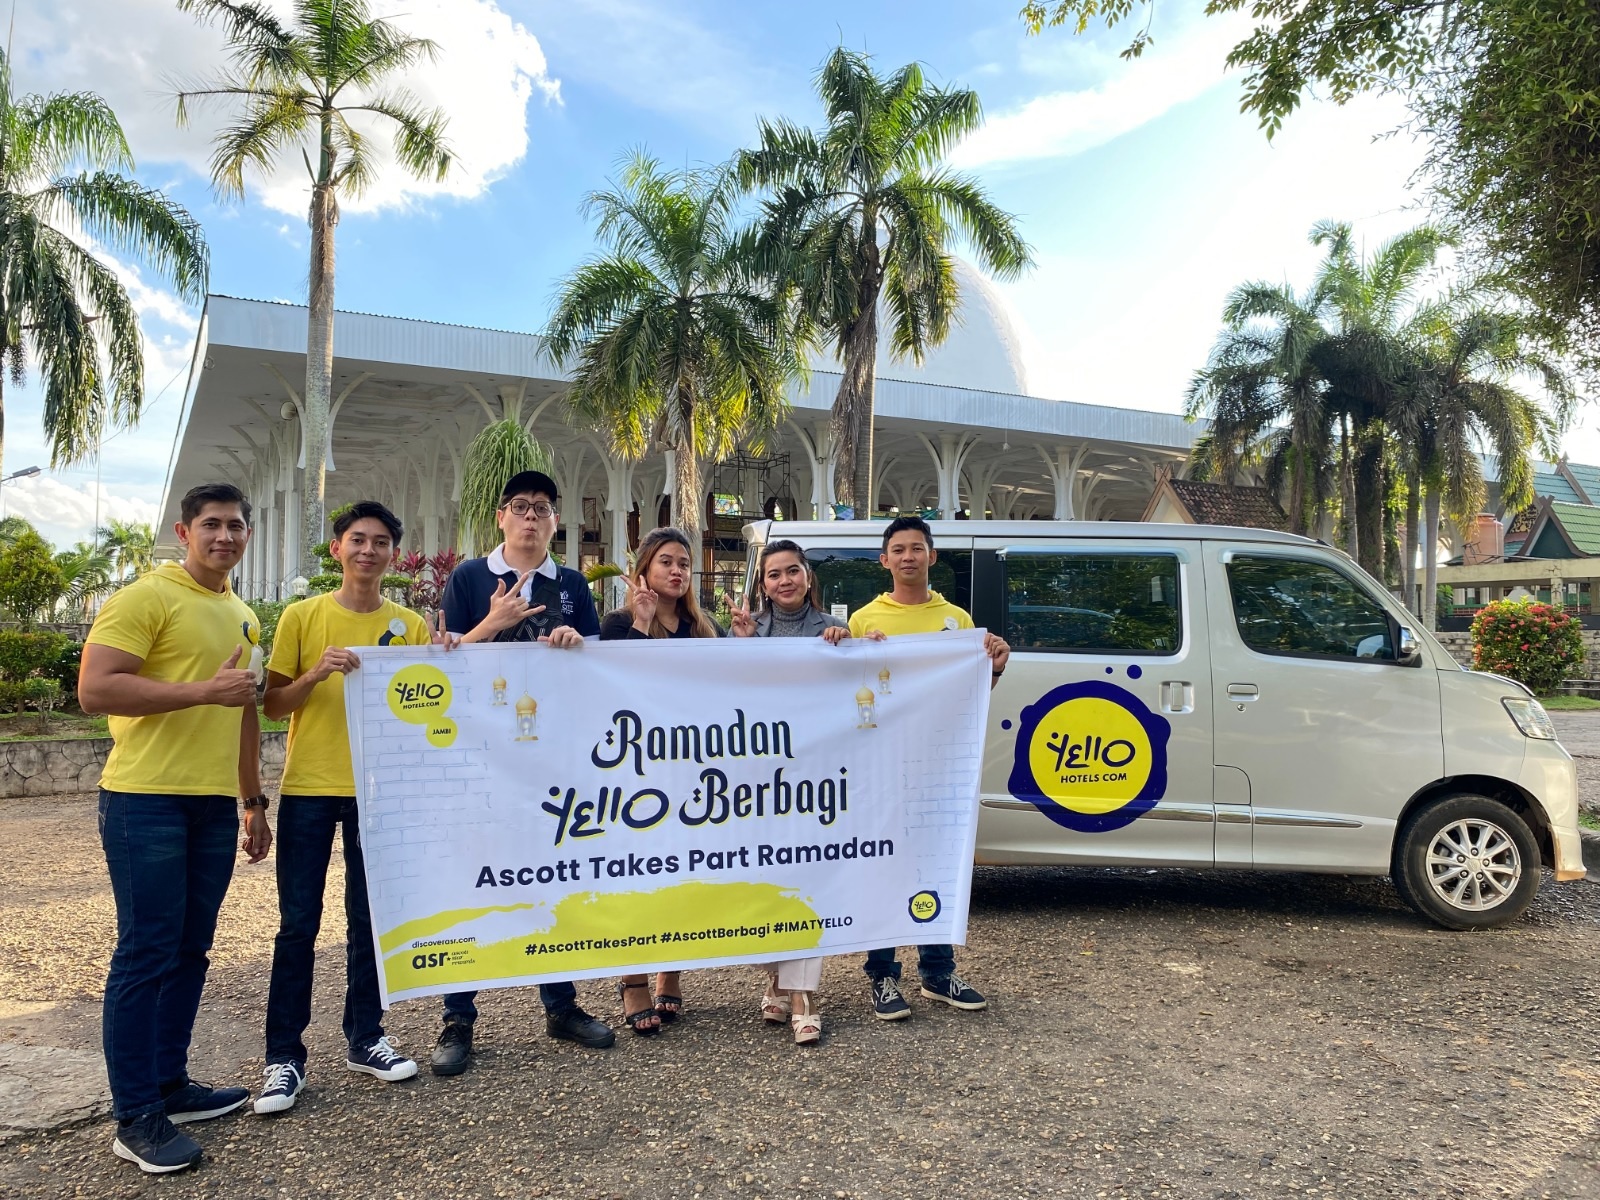  Ascott Indonesia Secara Serentak Membagikan 3000 Meal Box Kepada Masyarakat di 14 Kota di Indonesia